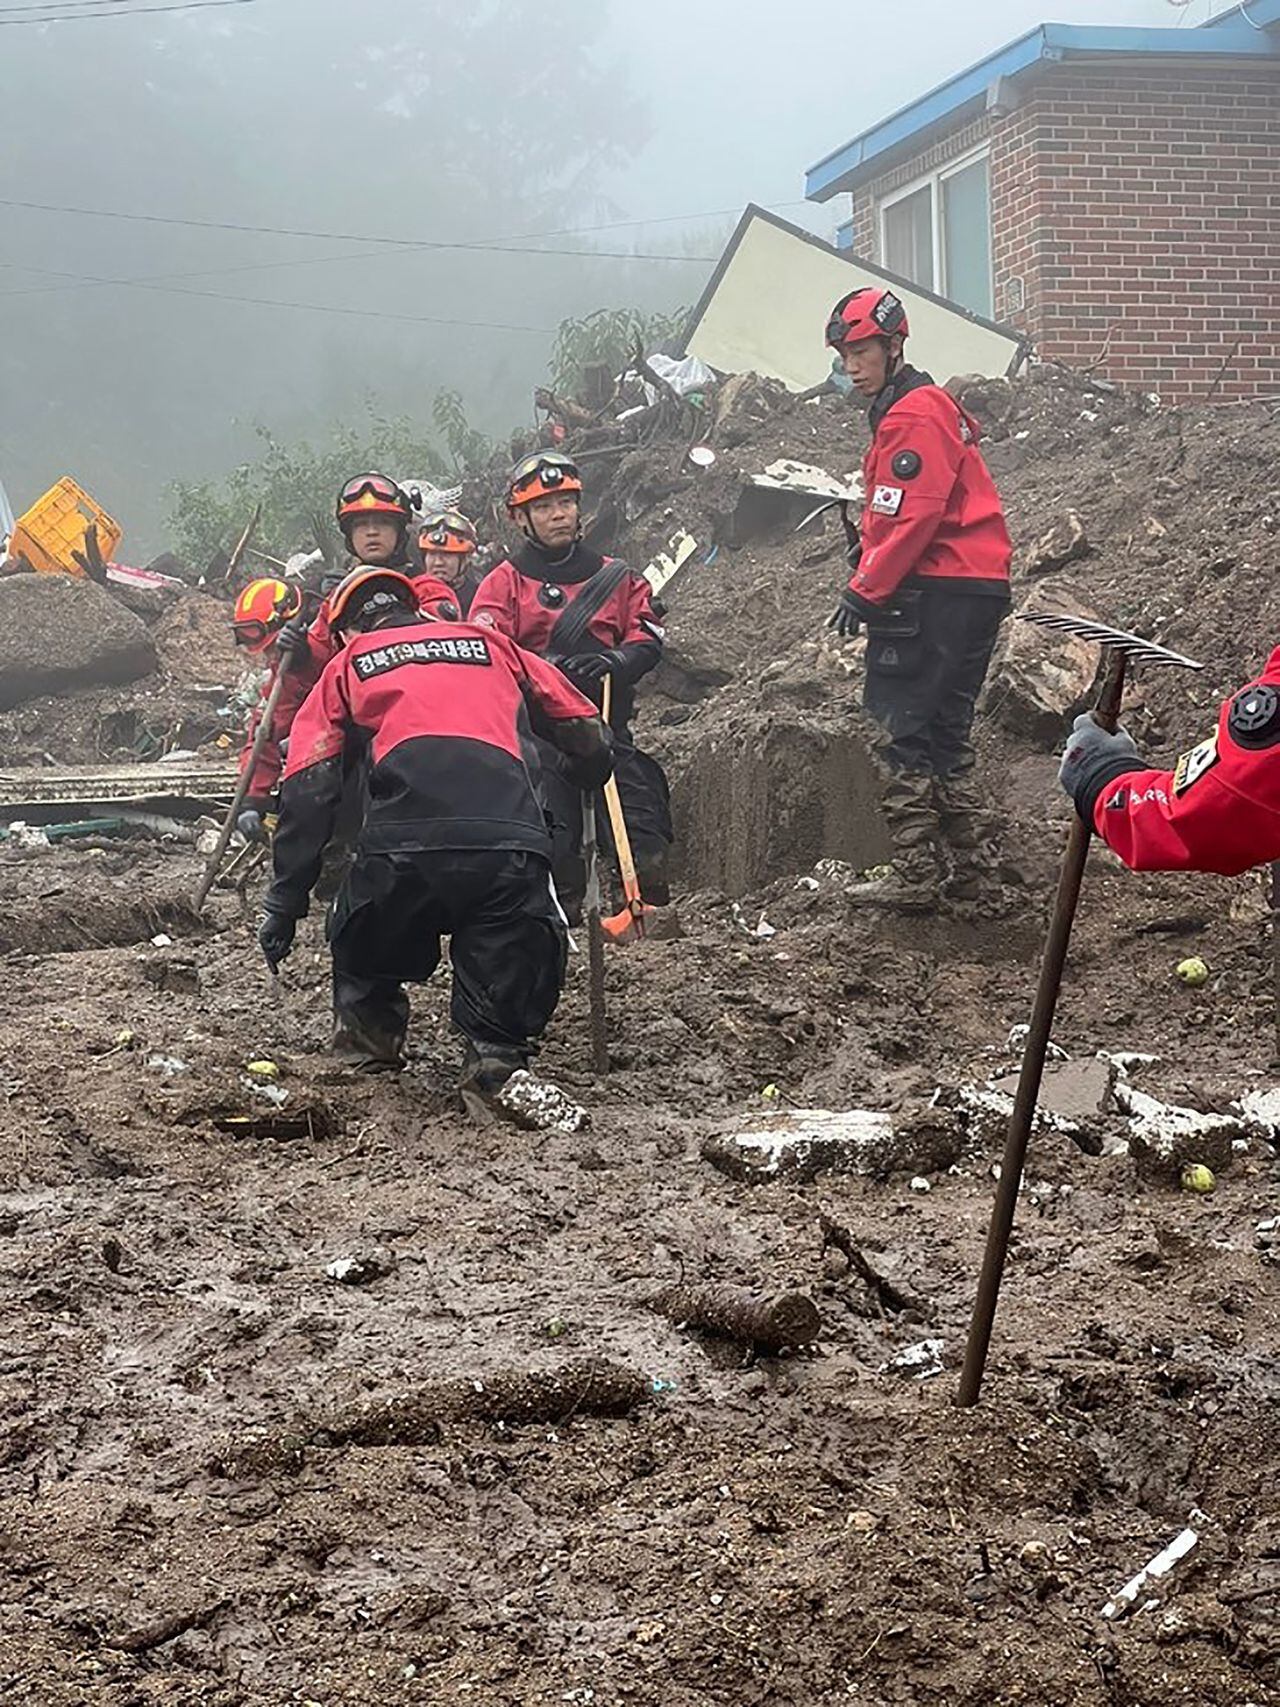 Trabajadores de rescate de Corea del Sur buscan personas desaparecidas después de que un deslizamiento de tierra azotara un pequeño pueblo luego de fuertes lluvias en Yecheon.